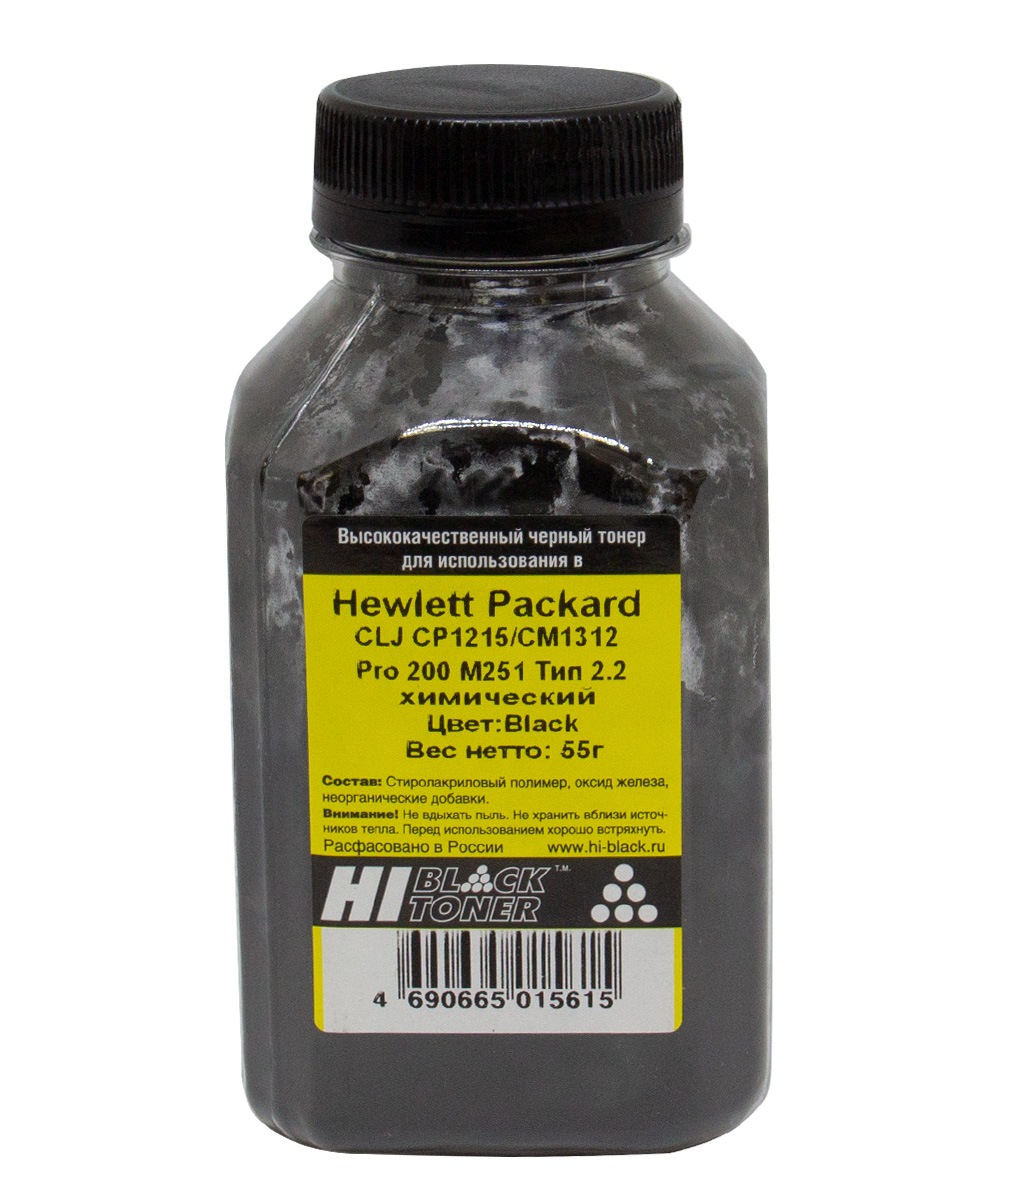 Тонер Hi-Black (Тип 2.2) химический для HP Color LJ CP1215/ CM1312/ Pro 200 M251, чёрный, 55 г.